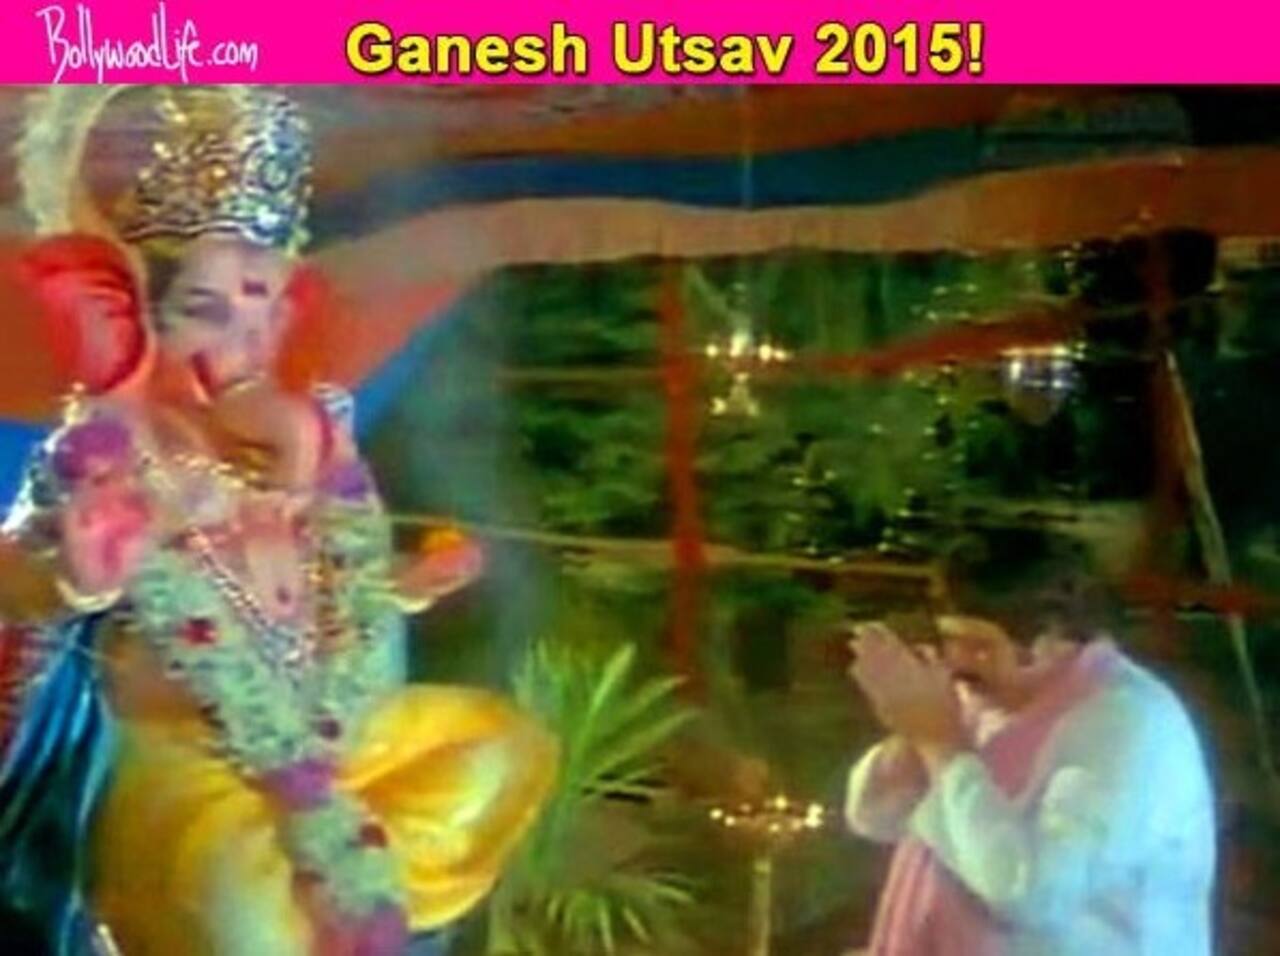 Ganesh Festival 2015 Song of the Day: Celebrate the festival with the devotional number Deva ho deva Ganpati deva from Humse Badhkar Kaun!